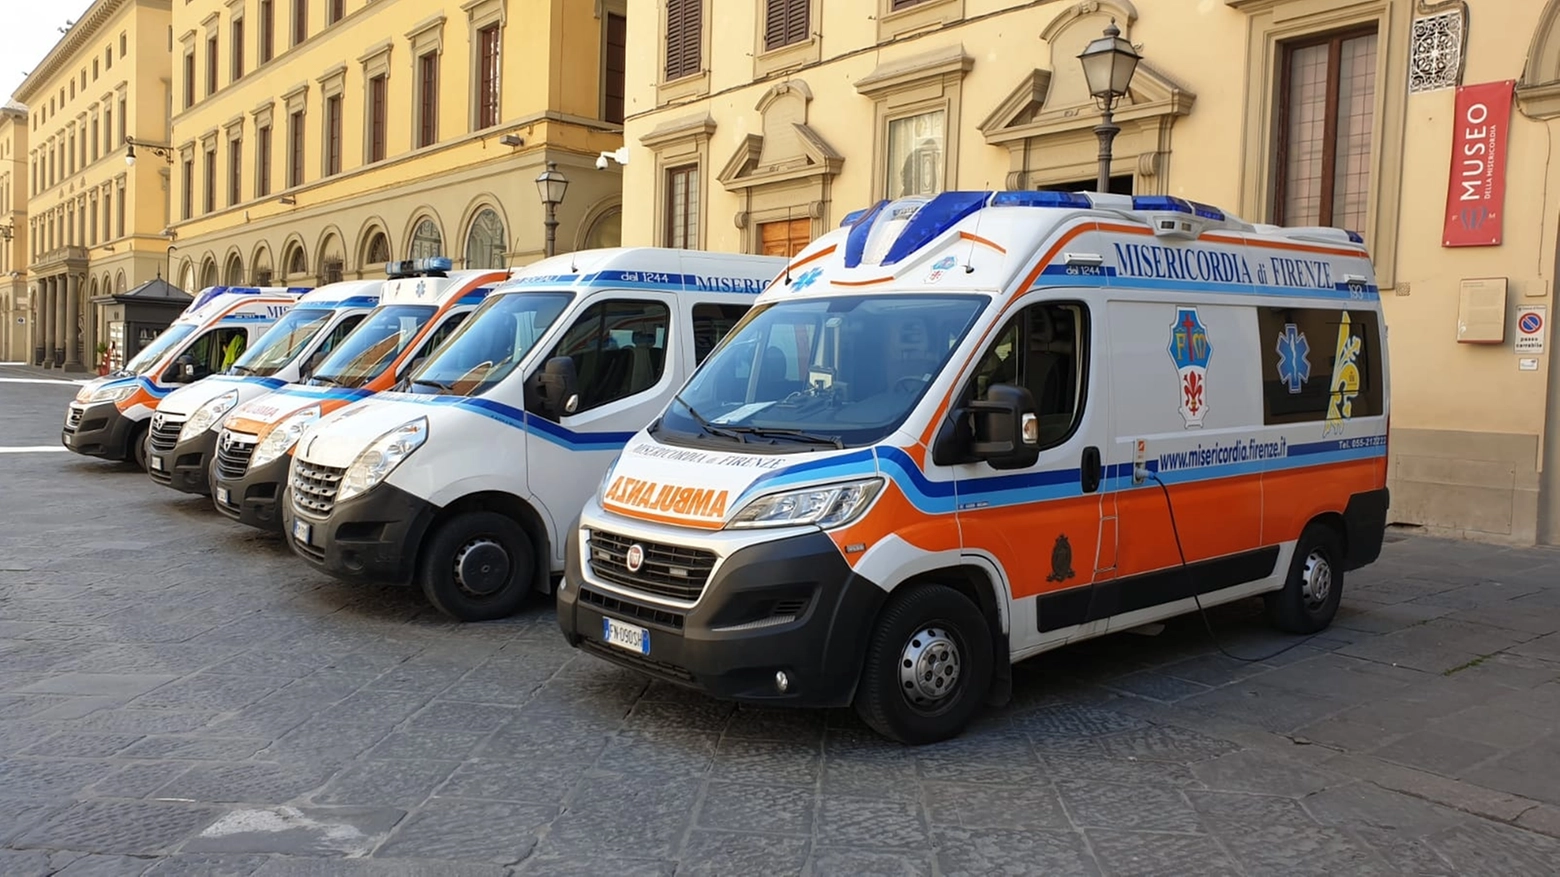 Le ambulanze della Misericordia di fronte alla sede di piazza Duomo